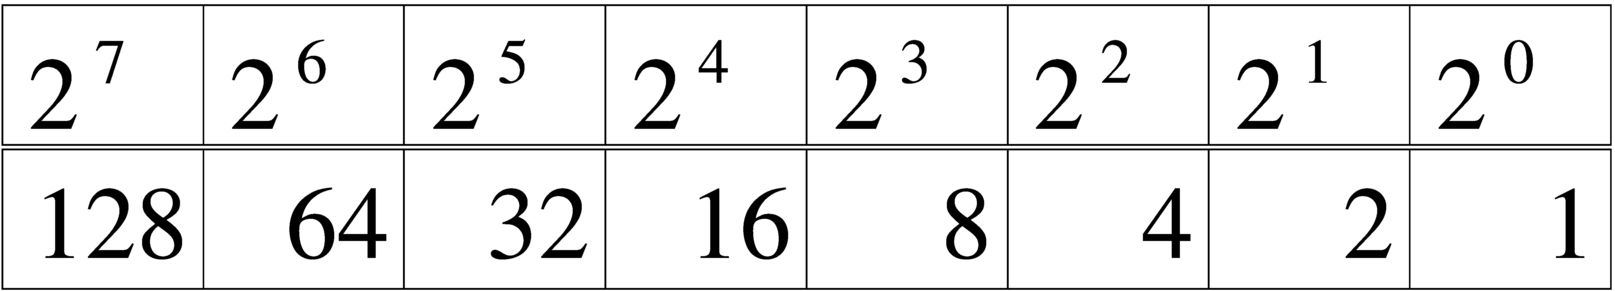 tabella per la conversione da base 10 a base 2